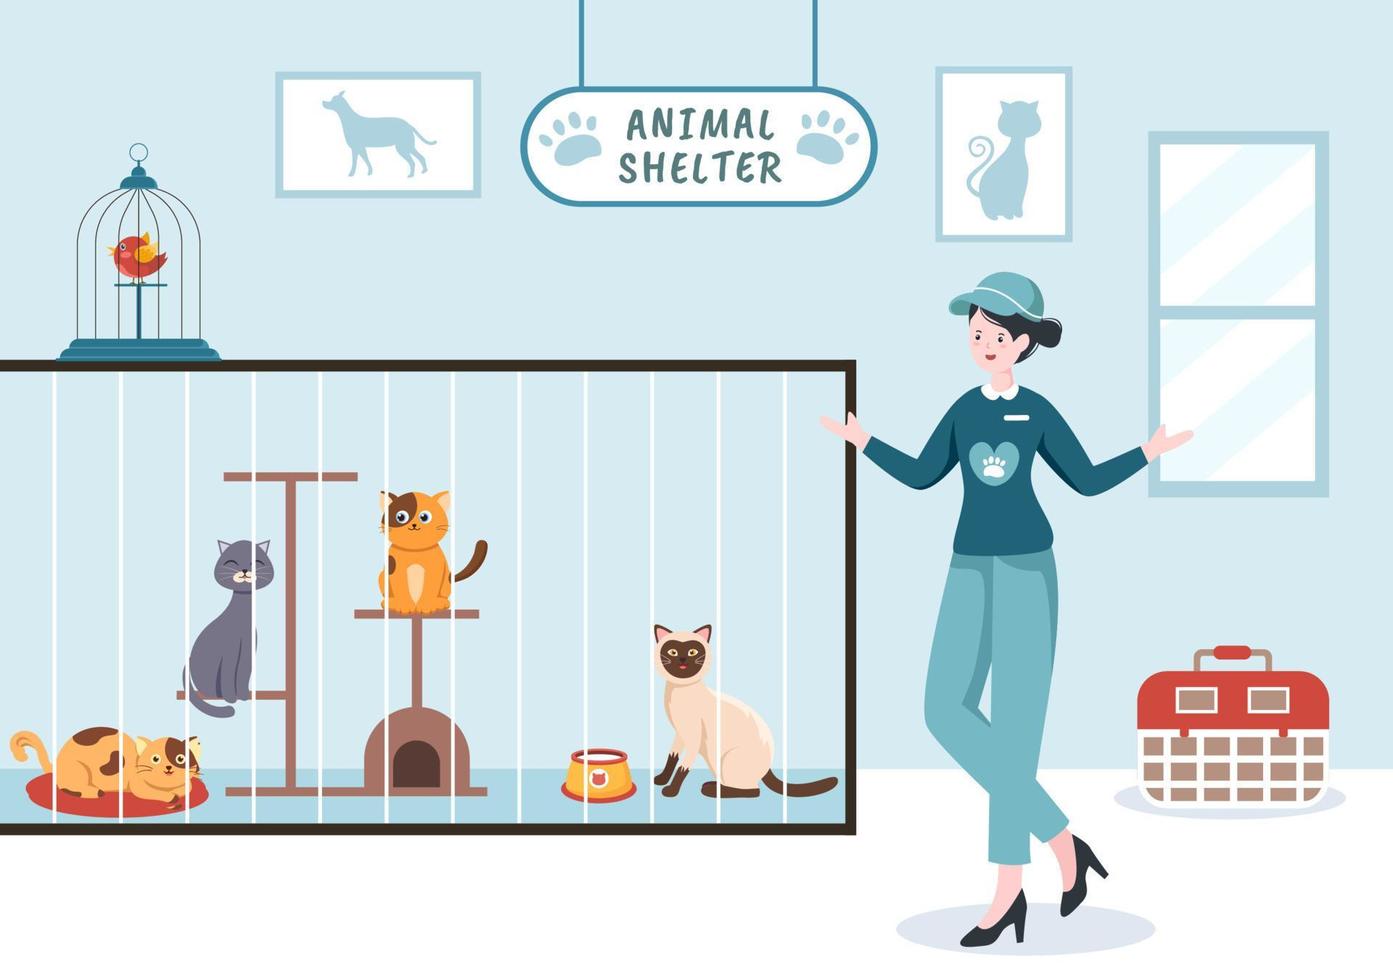 dierenasiel cartoon afbeelding met huisdieren die in kooien zitten en vrijwilligers die dieren voeren voor adoptie in platte handgetekende stijl ontwerp vector